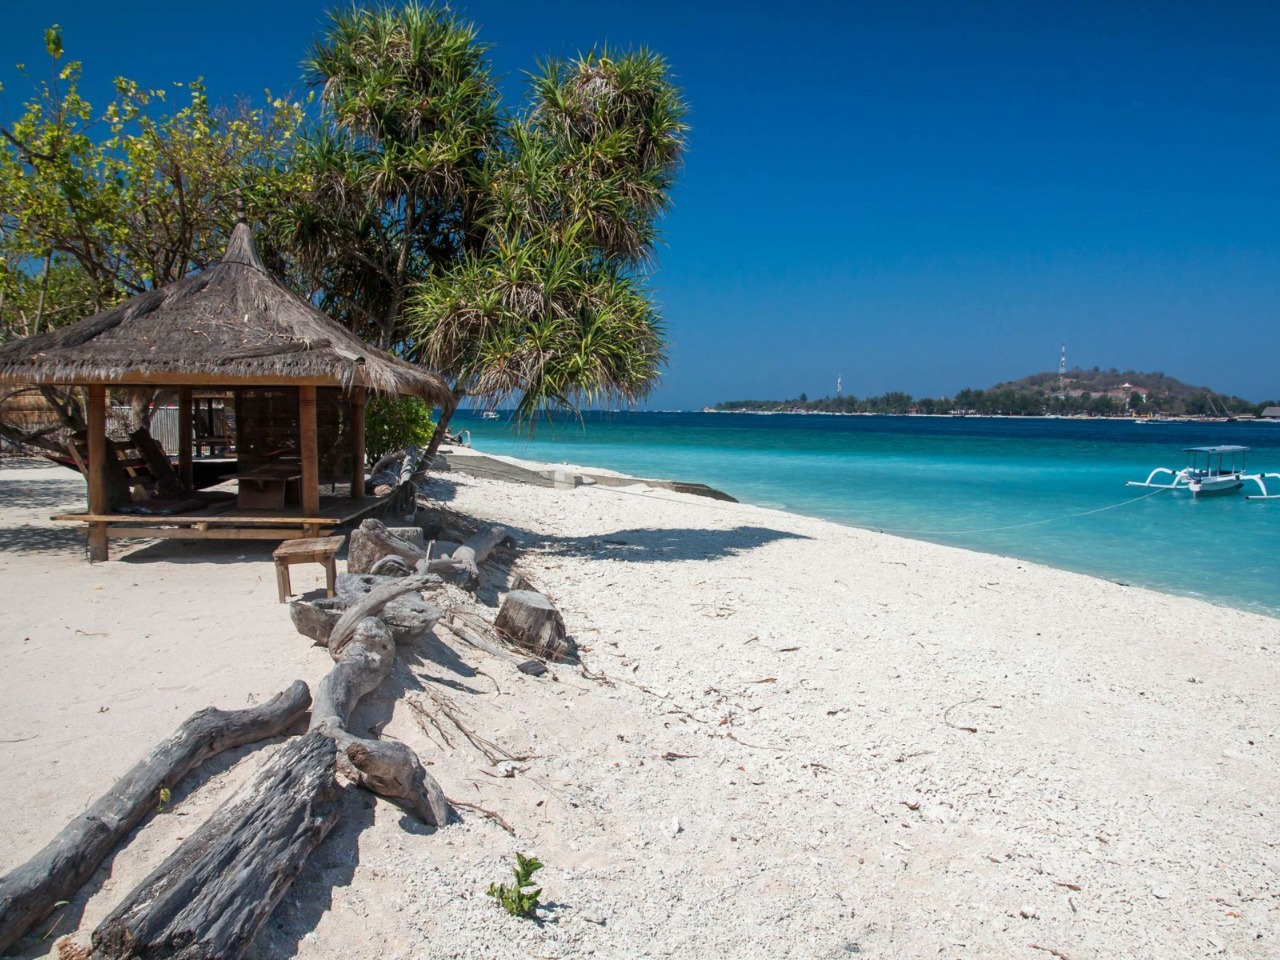 Острова Гили — белый песок и кристальная вода | Цена 125$, отзывы, описание экскурсии